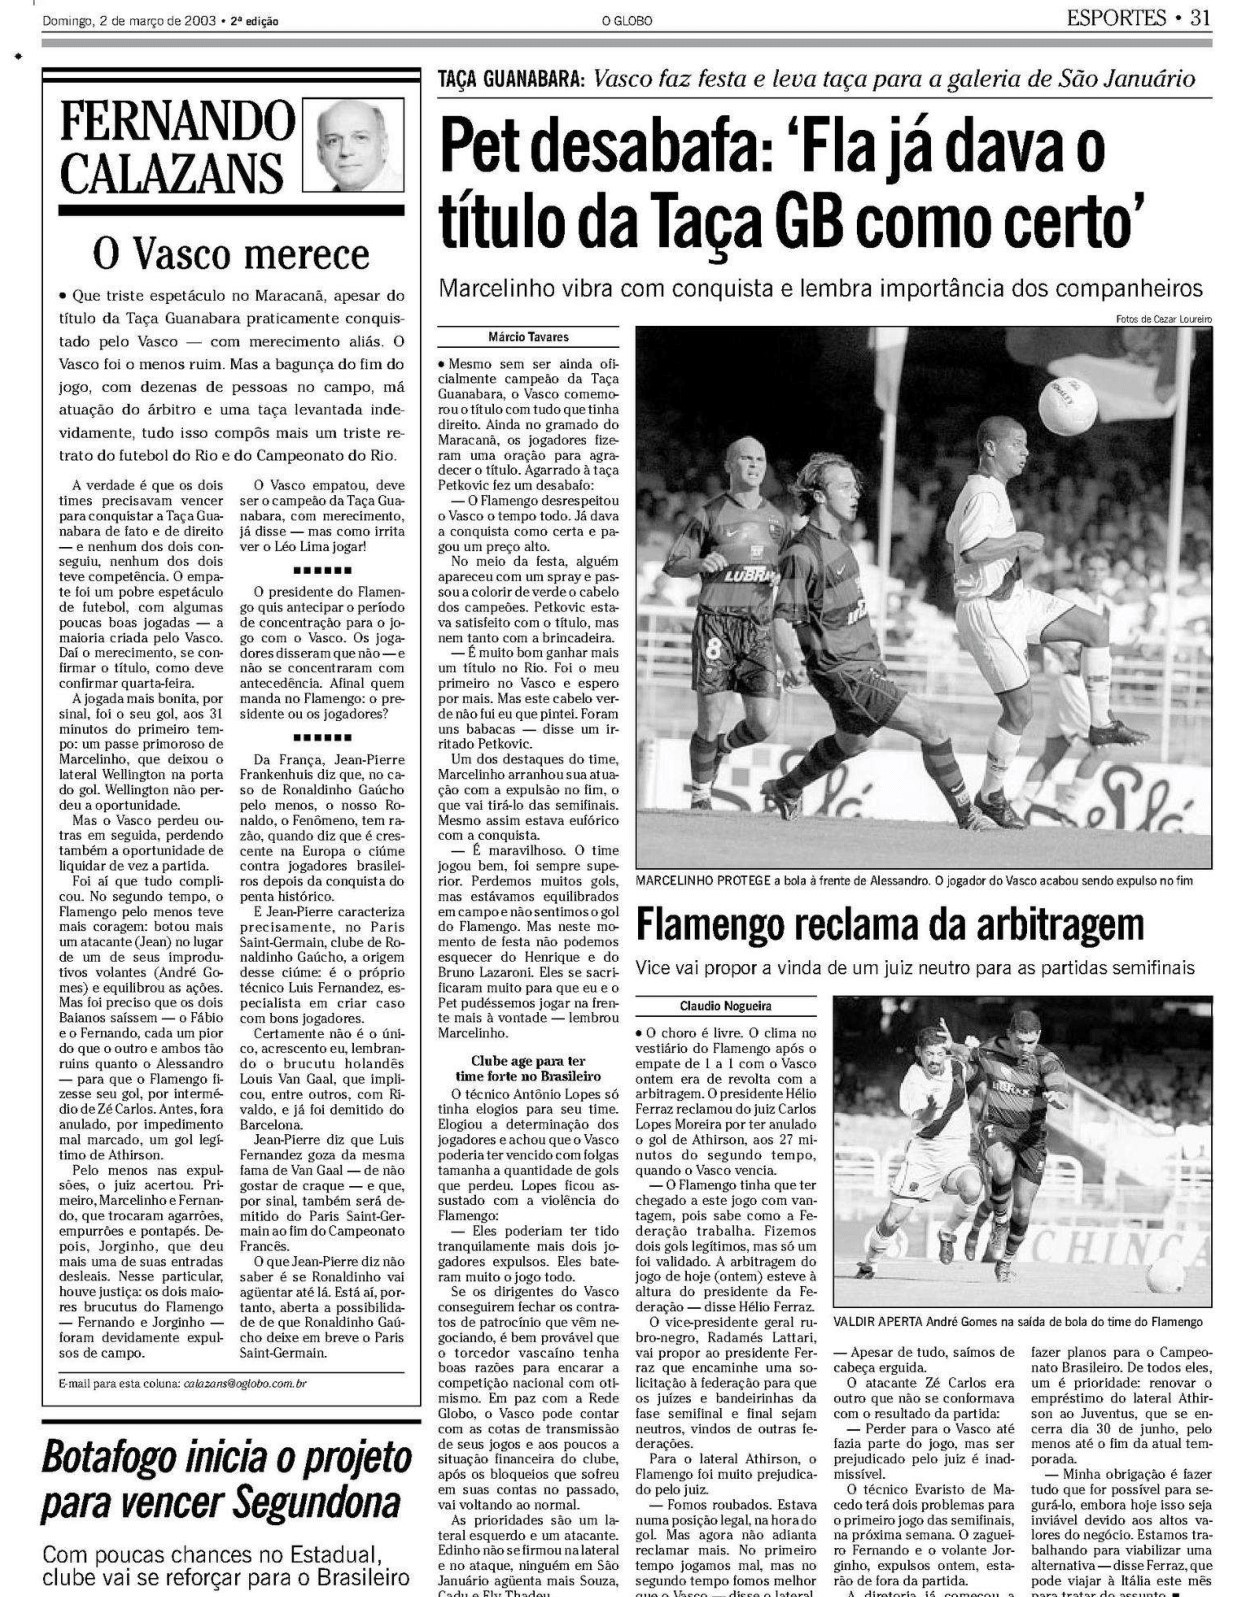 Petkovic, à época no Vasco, viu desrespeito do Flamengo antes da decisão - Reprodução/Acervo O Globo